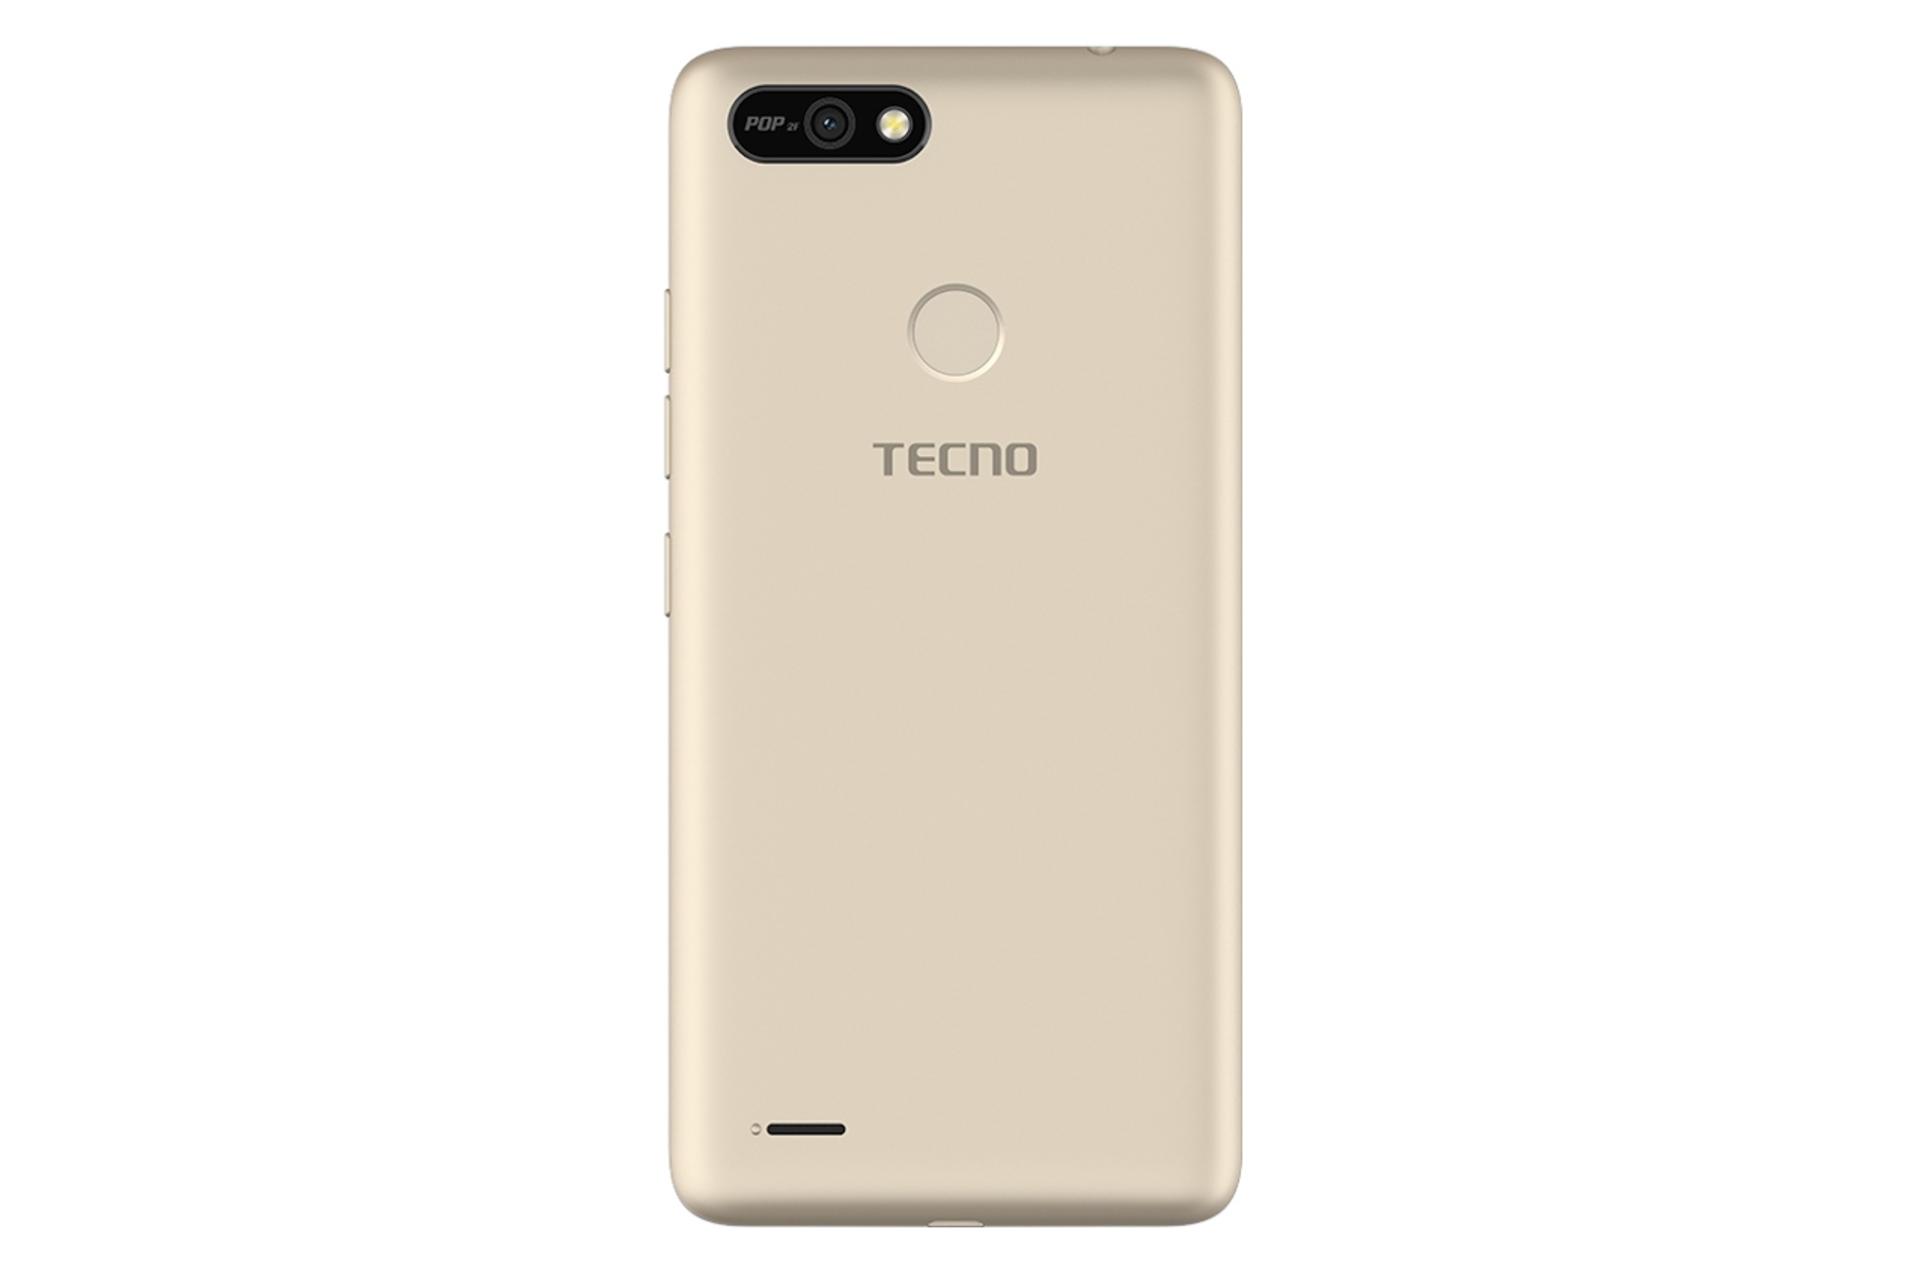 پنل پشت گوشی موبایل پاپ 2 اف تکنو Tecno Pop 2F طلایی